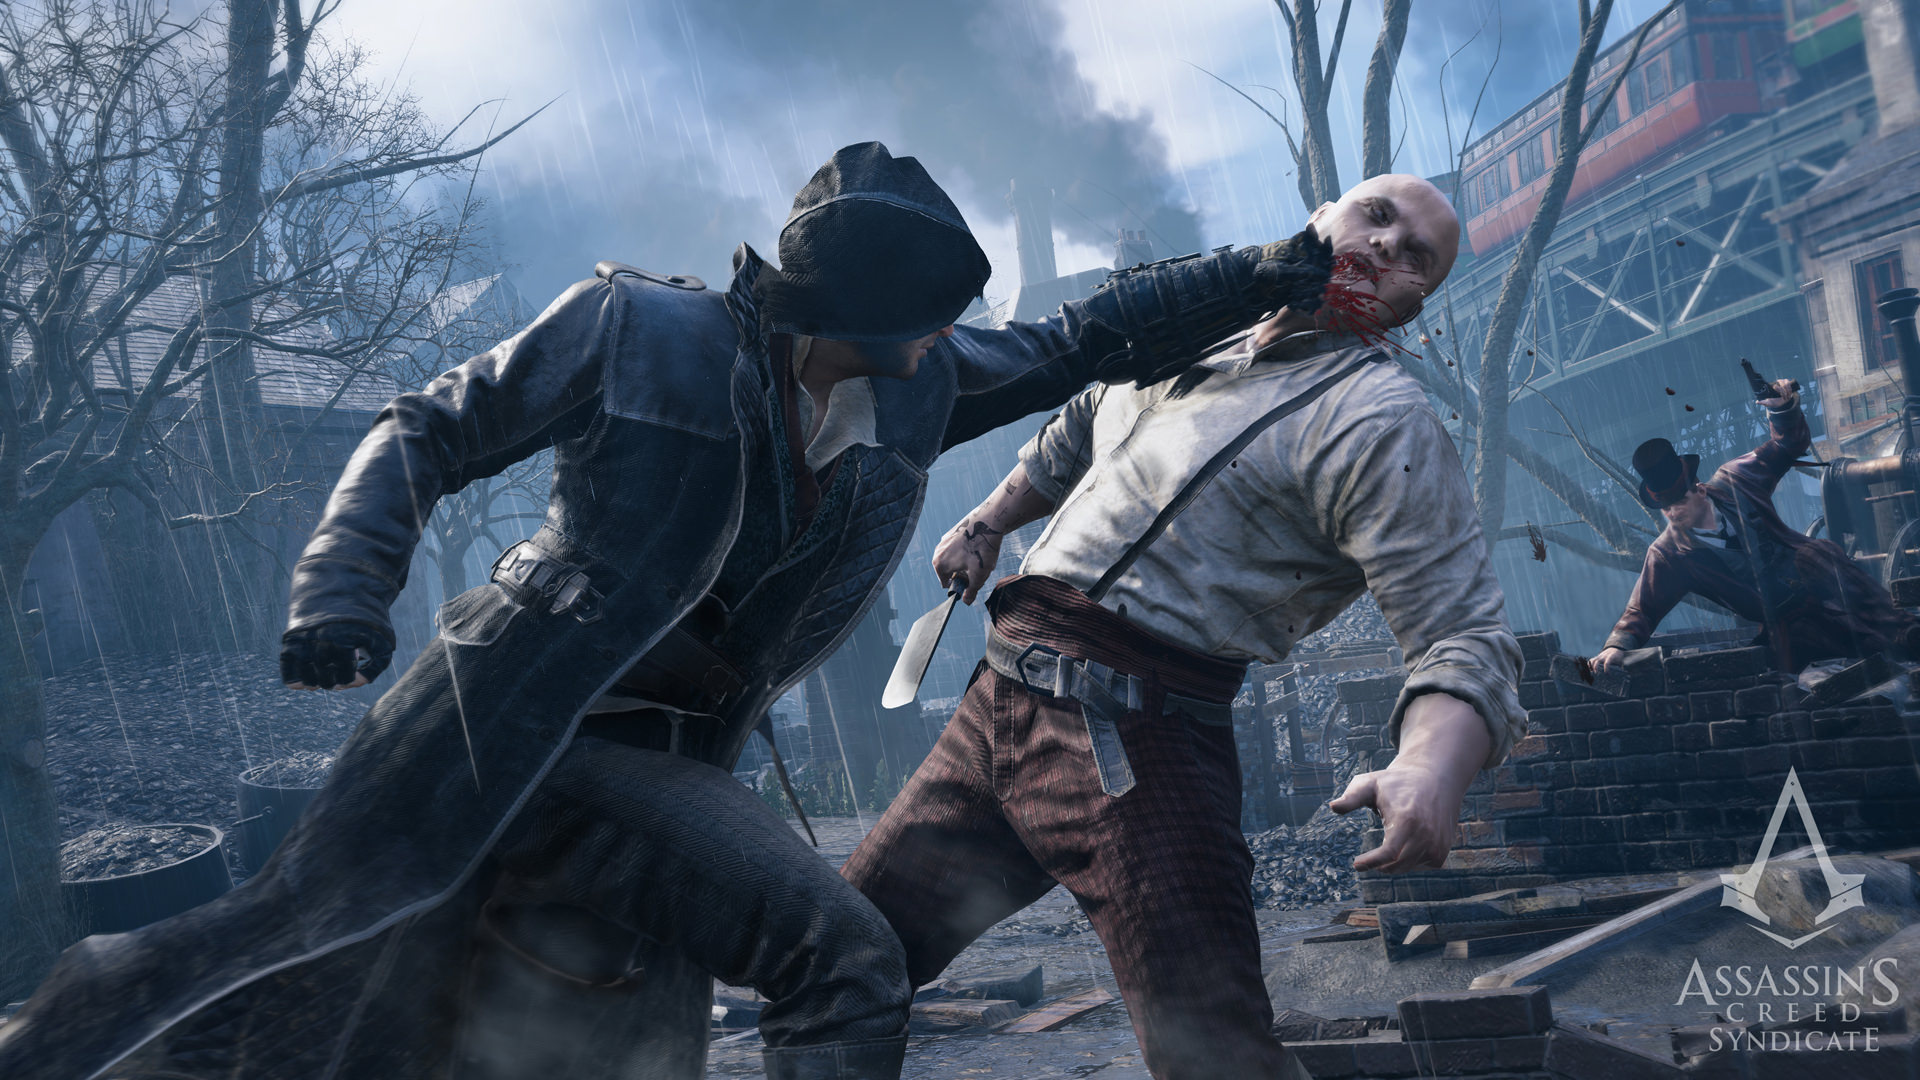 Nhanh tay lấy game Assassin's Creed Syndicate hiện đang được Epic Games tặng miễn phí